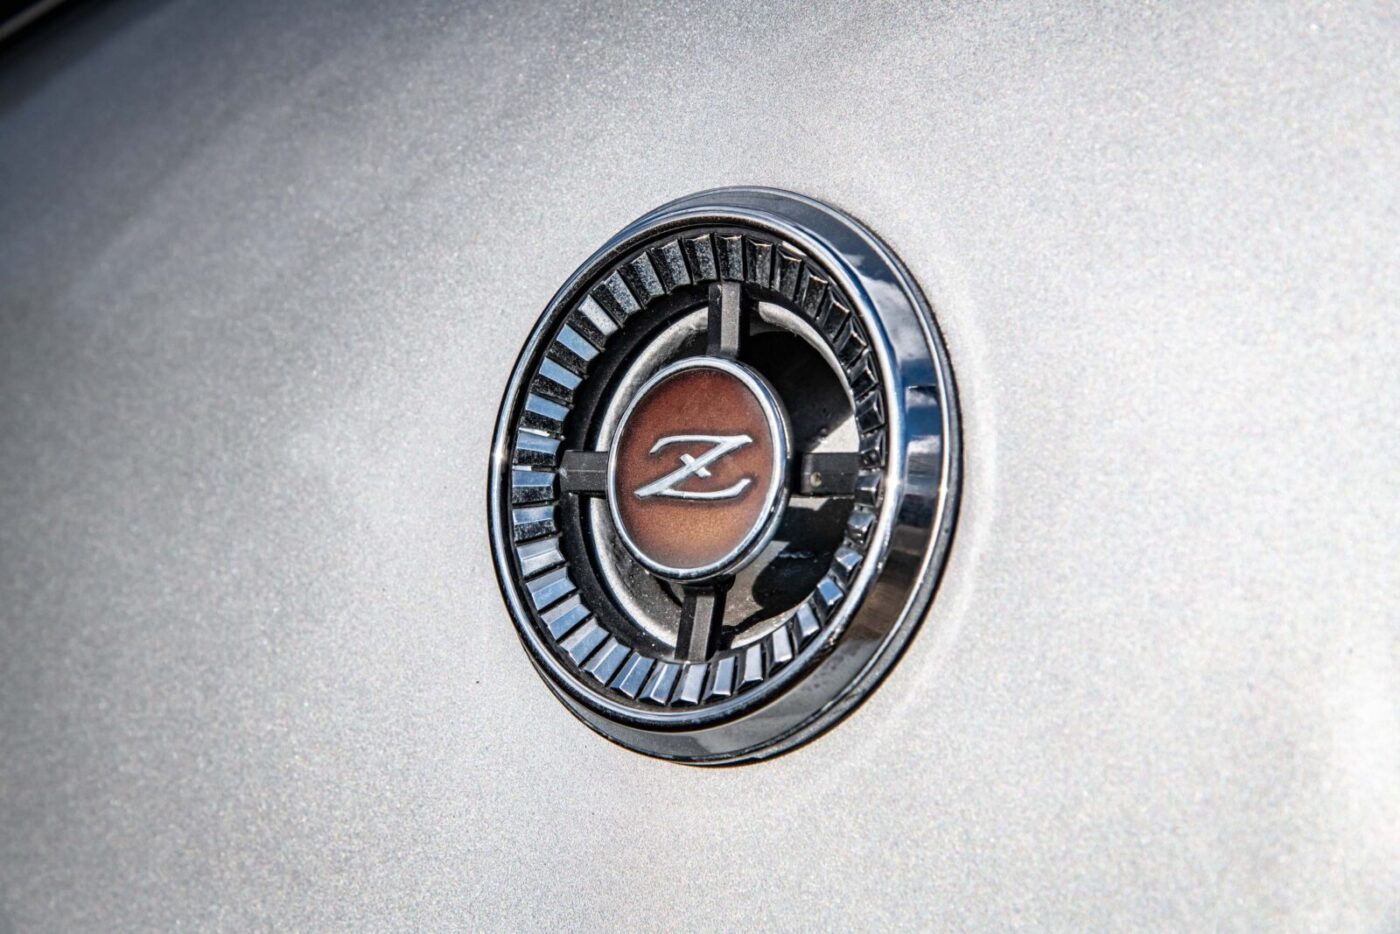 Datsun 260Z badge